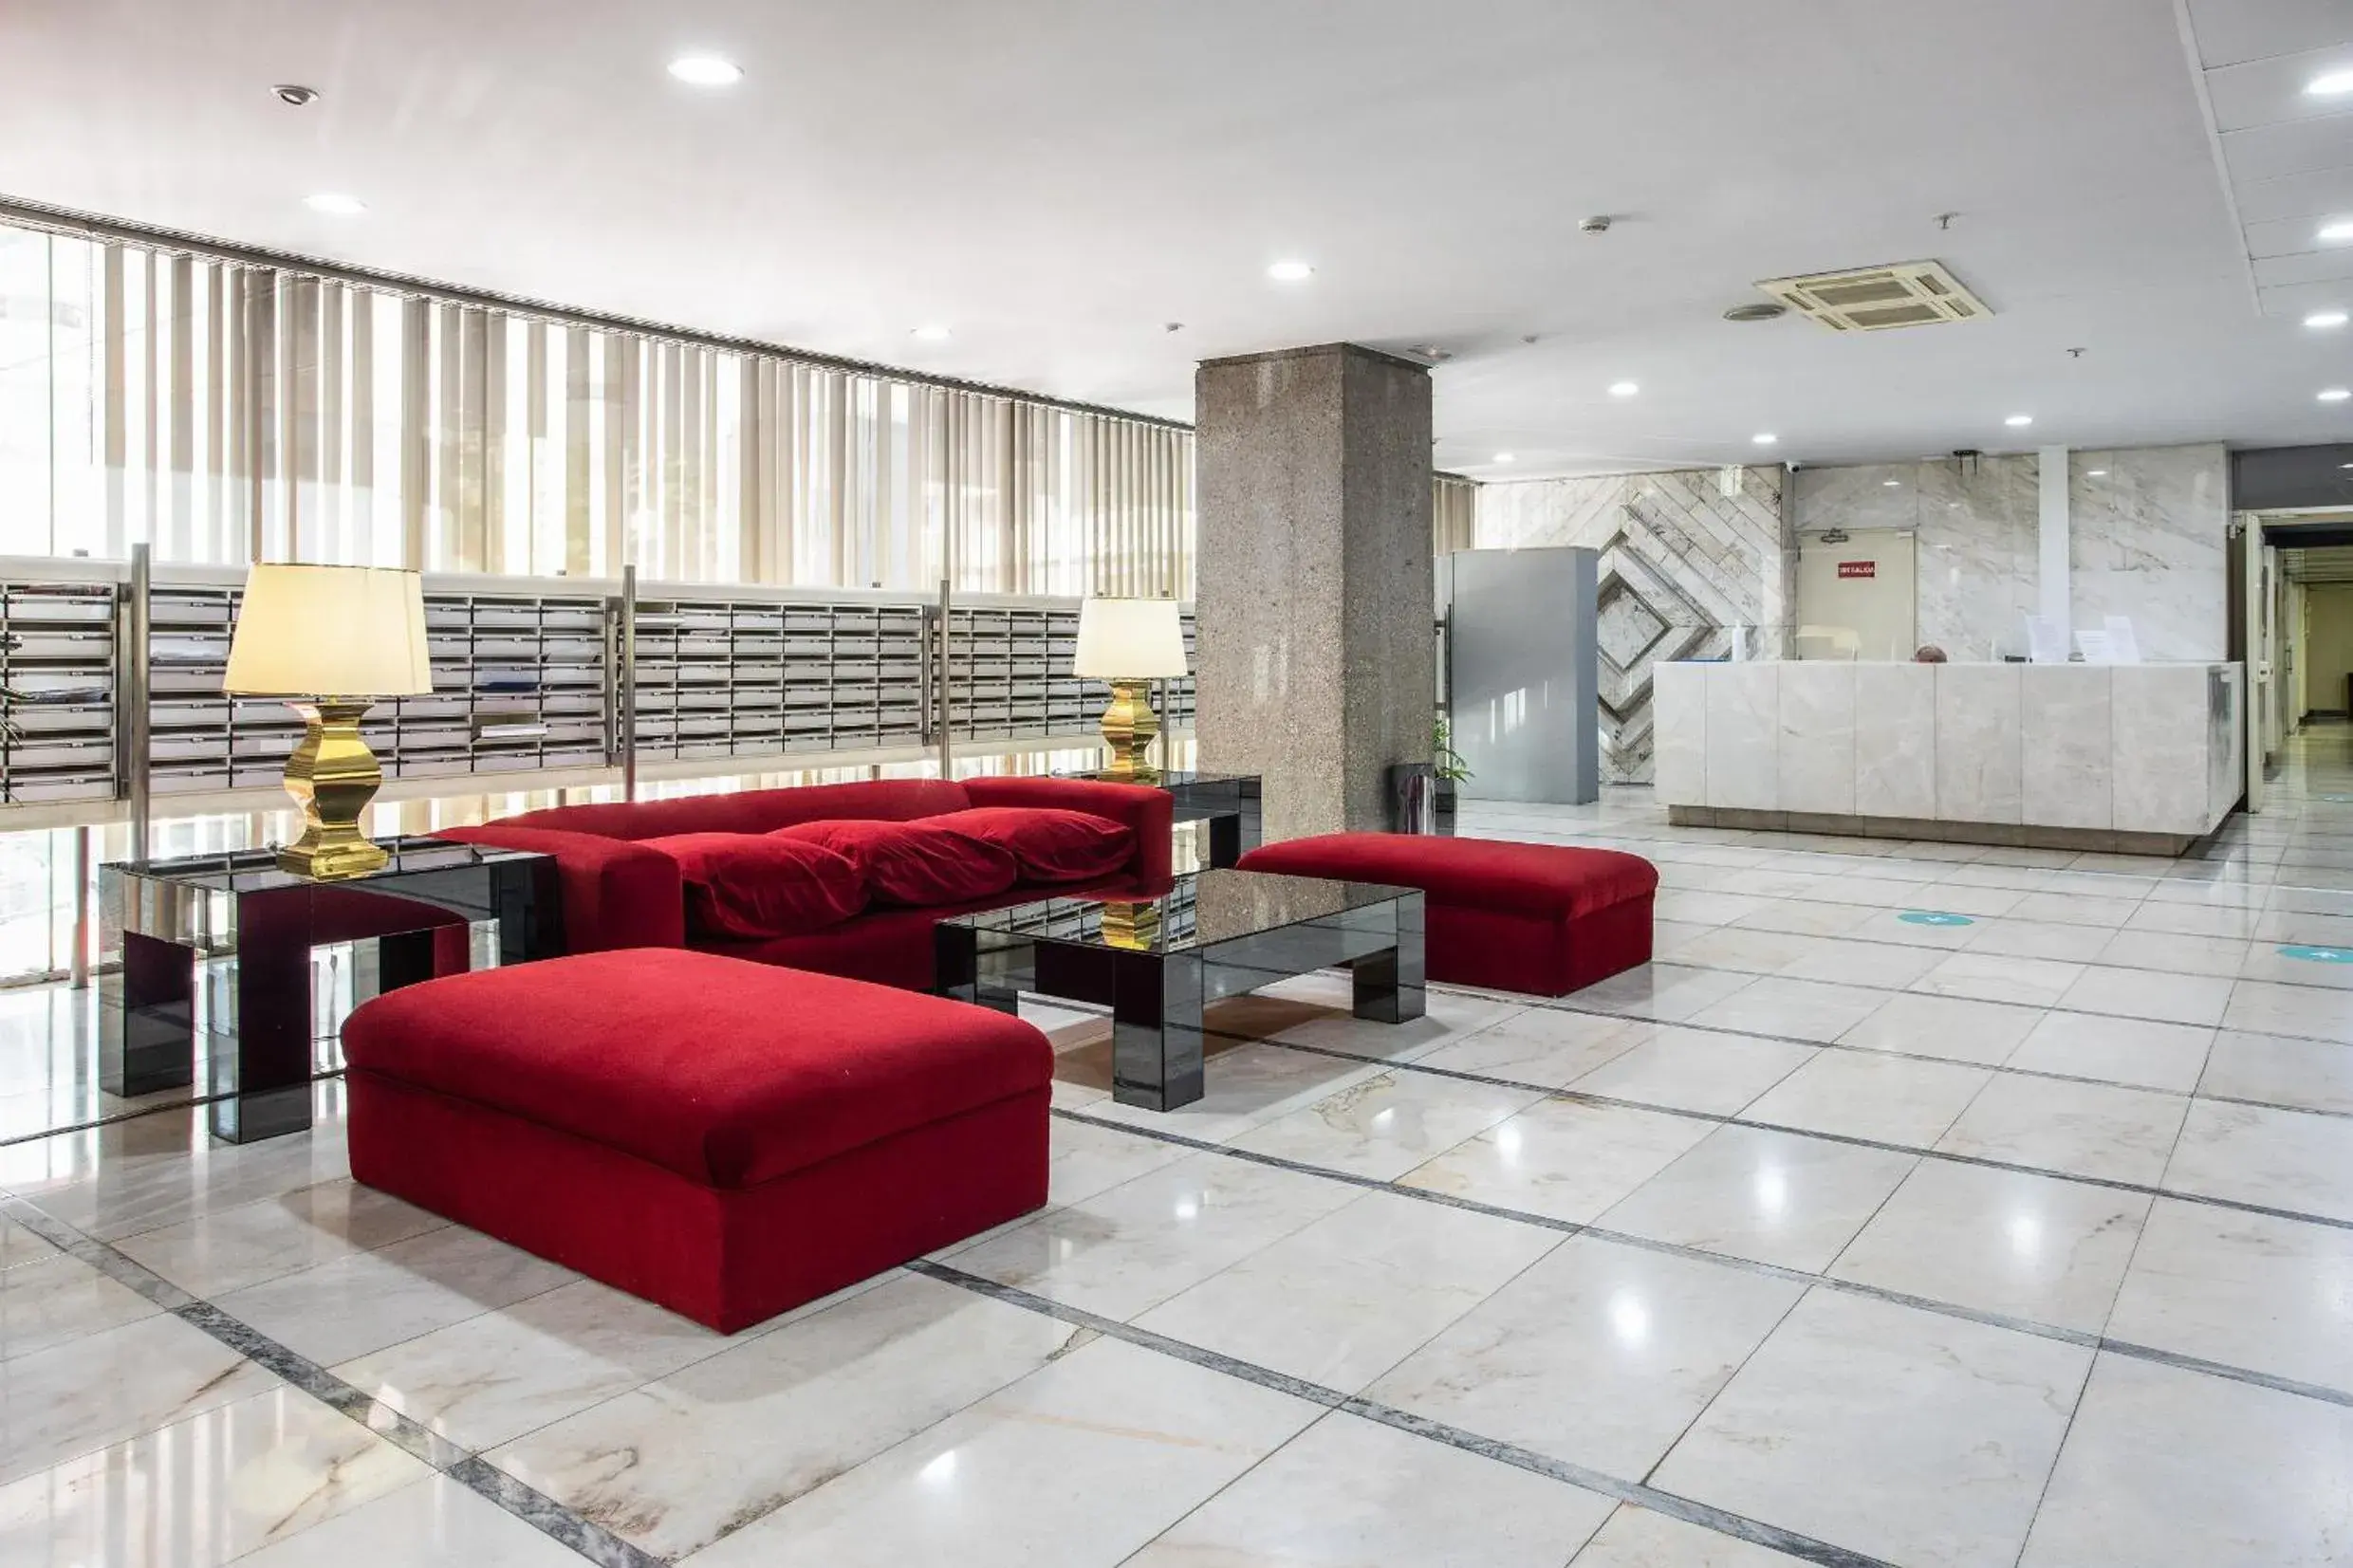 Lobby or reception, Lobby/Reception in Pierre & Vacances Apartamentos Edificio Eurobuilding 2